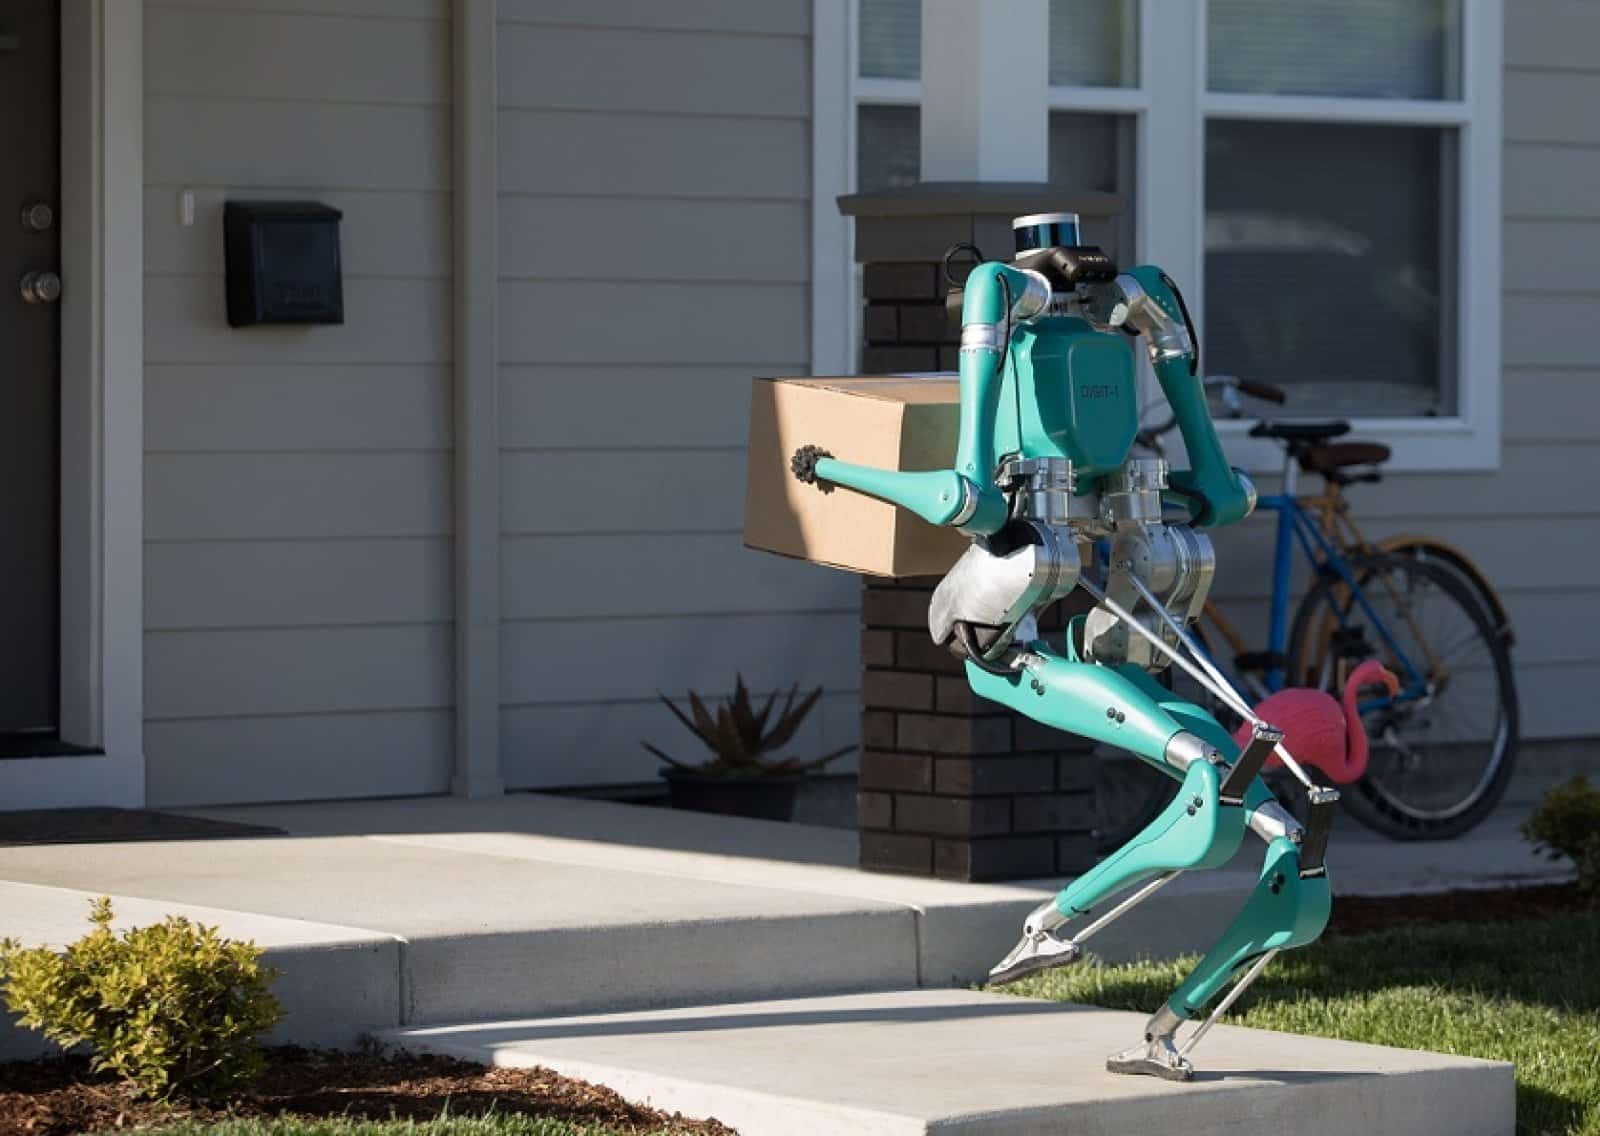 Le constructeur américain imagine un robot autonome capable de nous livrer à domicile.